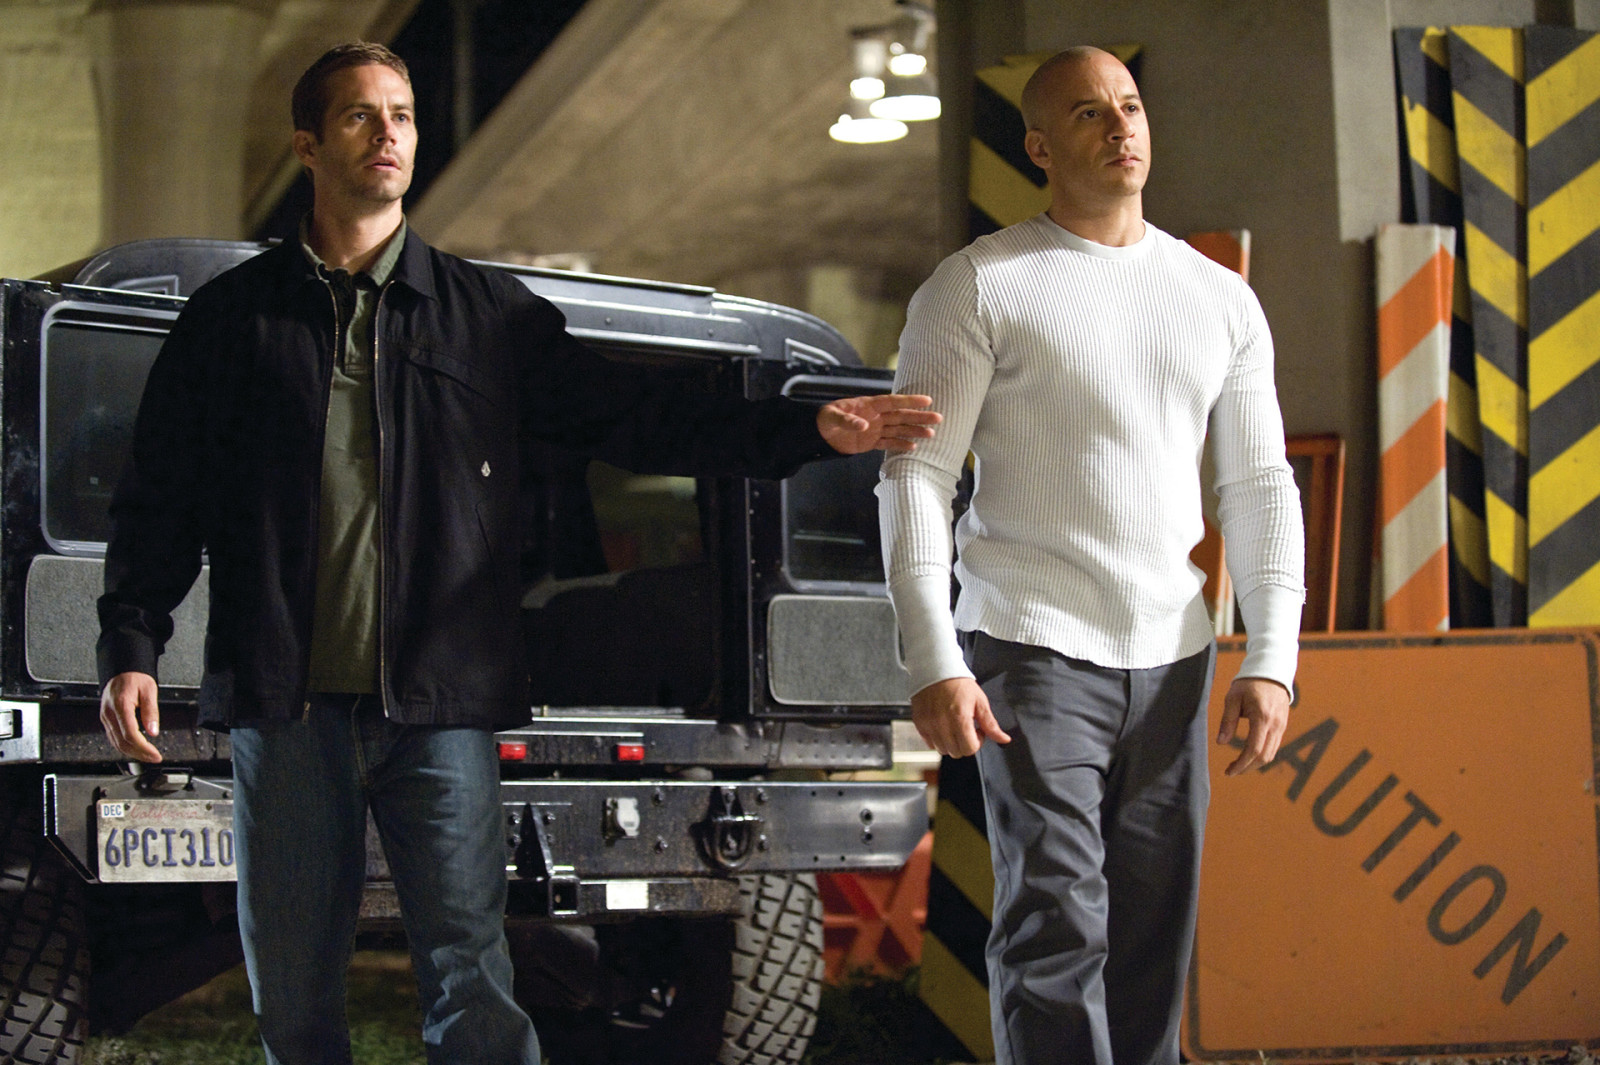 范·迪塞尔, 多米尼克·托雷托（Dominic Toretto）, 保罗沃克, 布莱恩·奥康纳